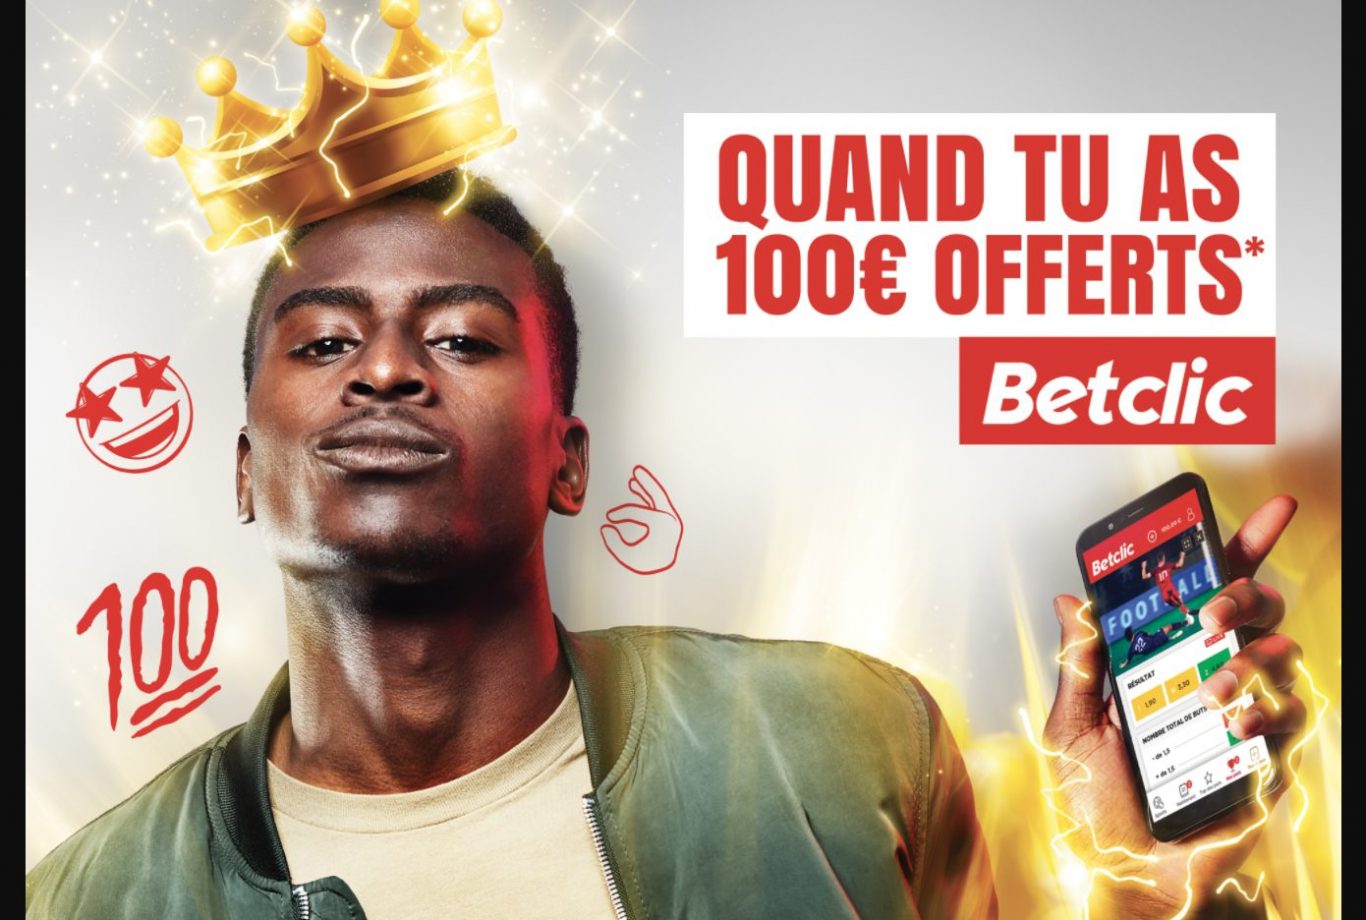 Betclic Cote d'Ivoire est un site de paris sportifs